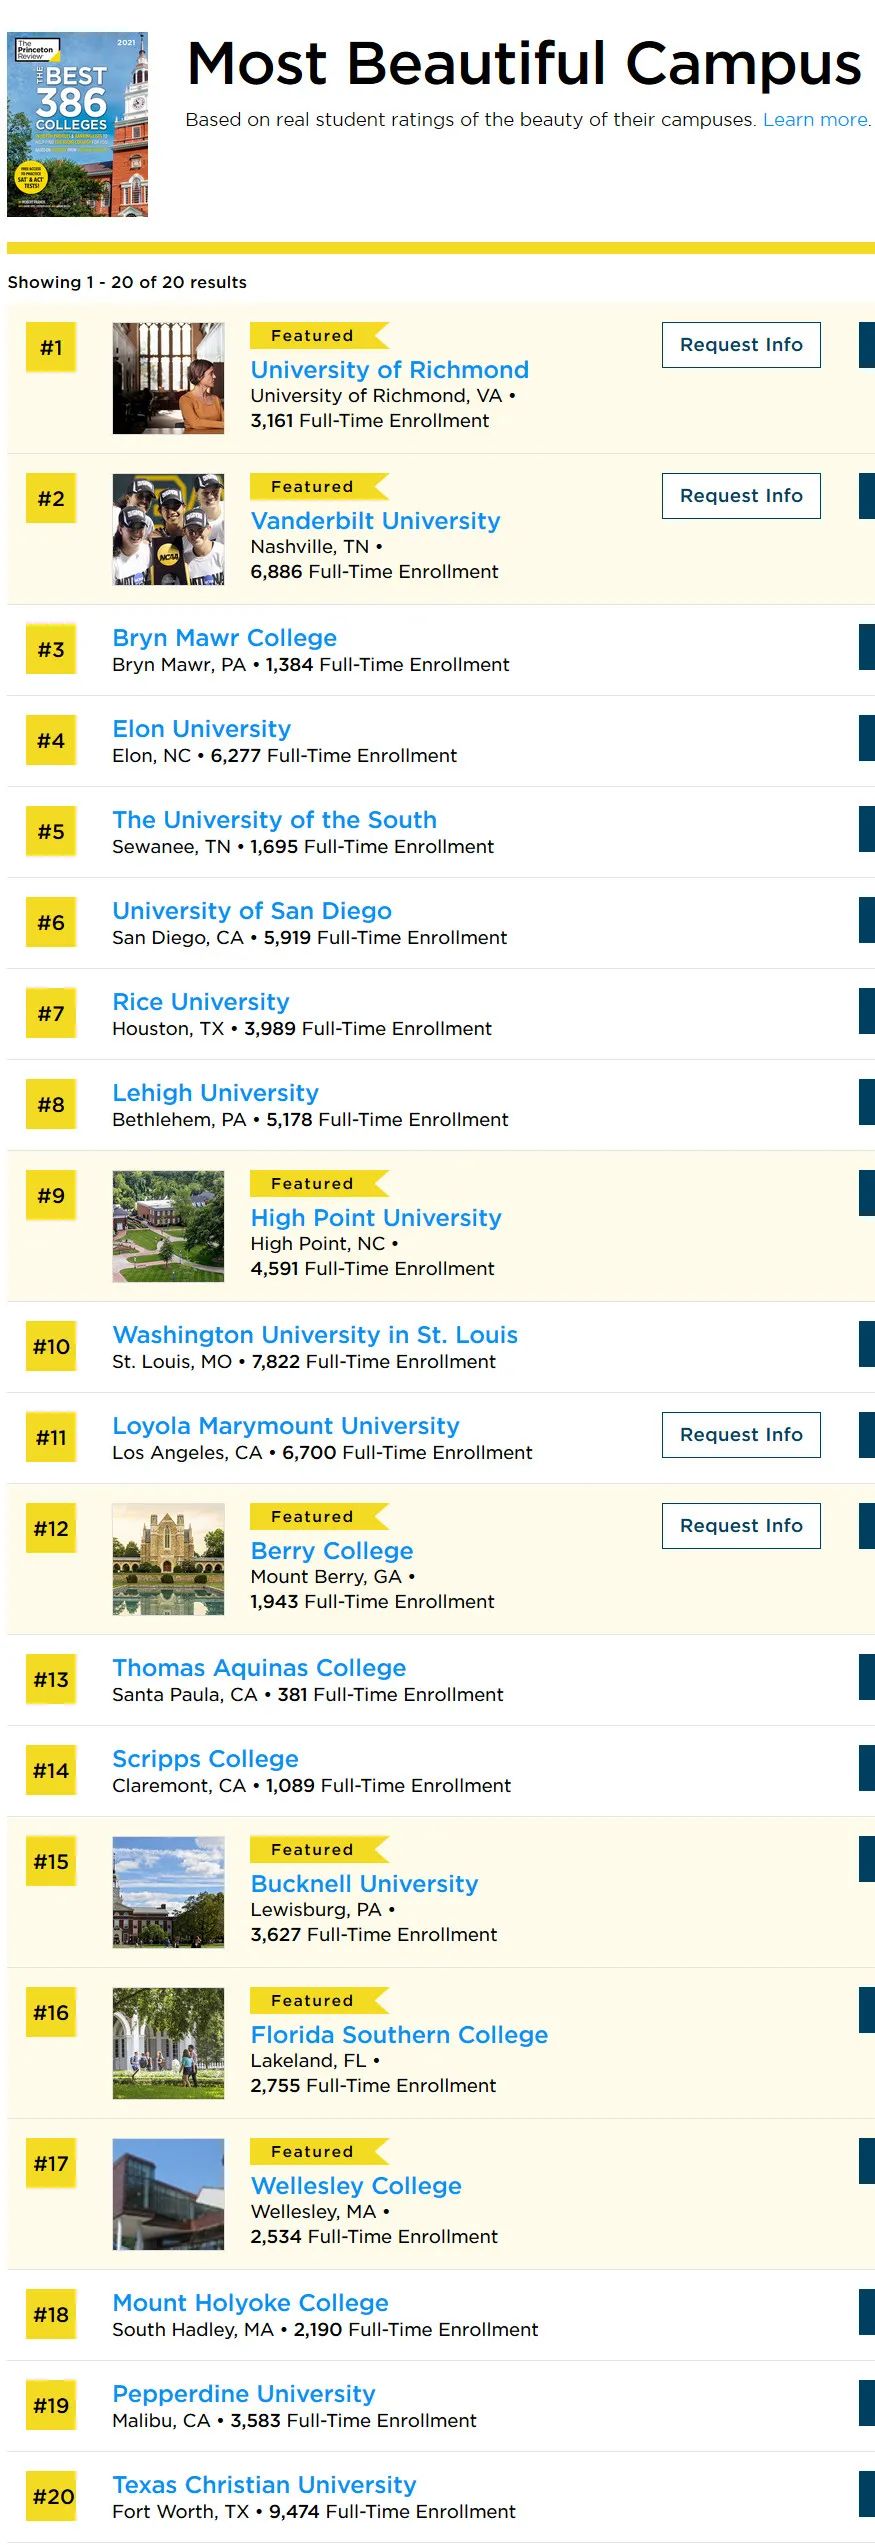 《普林斯顿评论》发布2021年全美校园较美大学排名